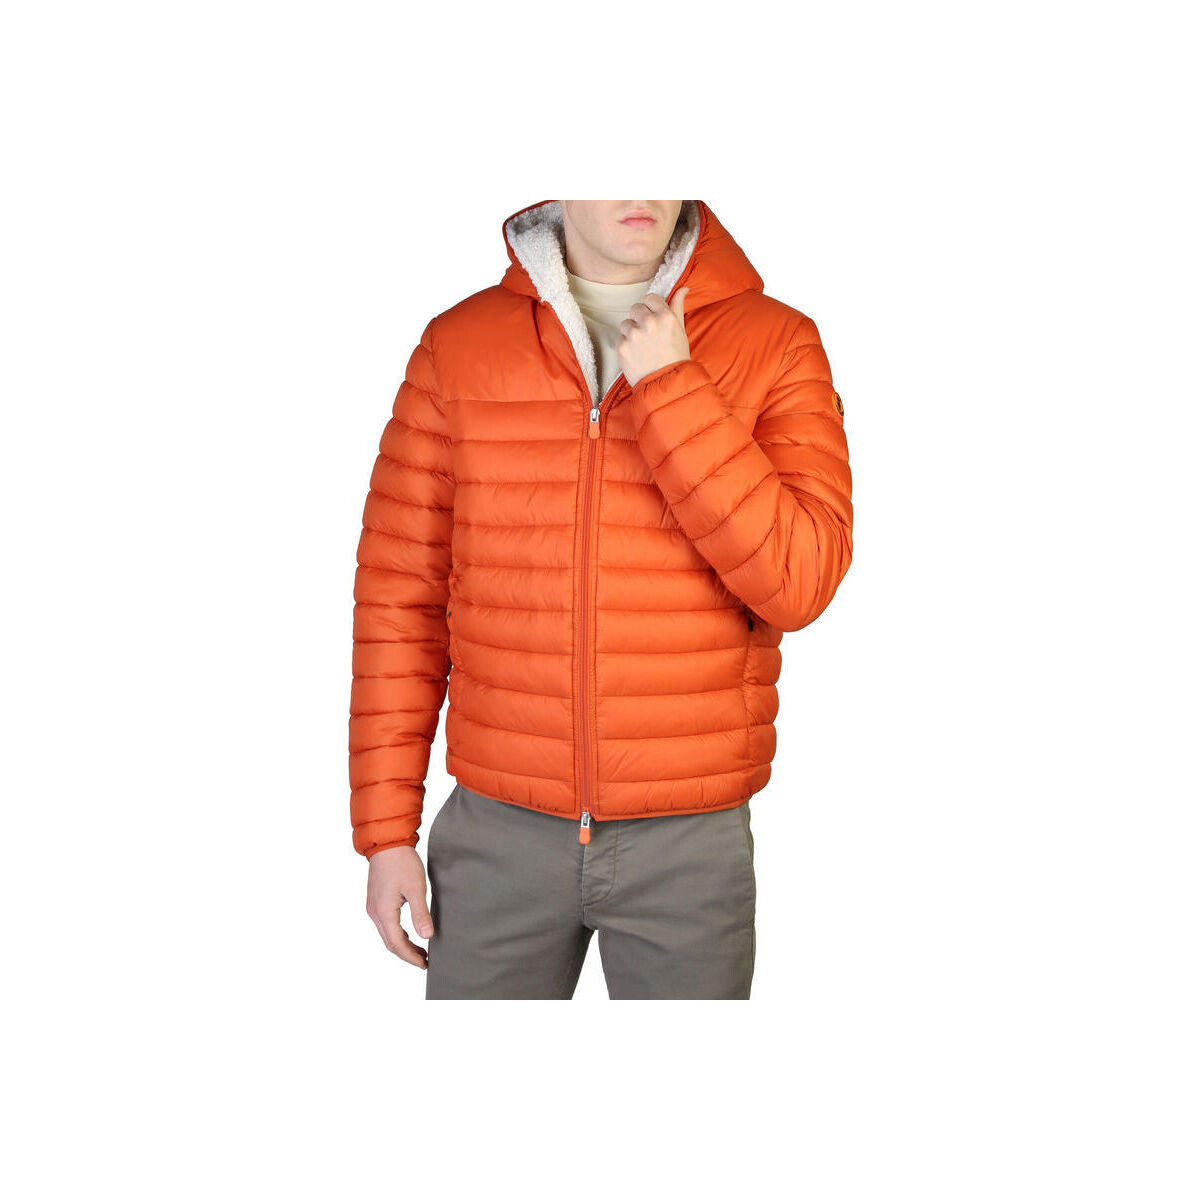 Oblačila Moški Športne jope in jakne Save The Duck - nathan-d39050m Oranžna